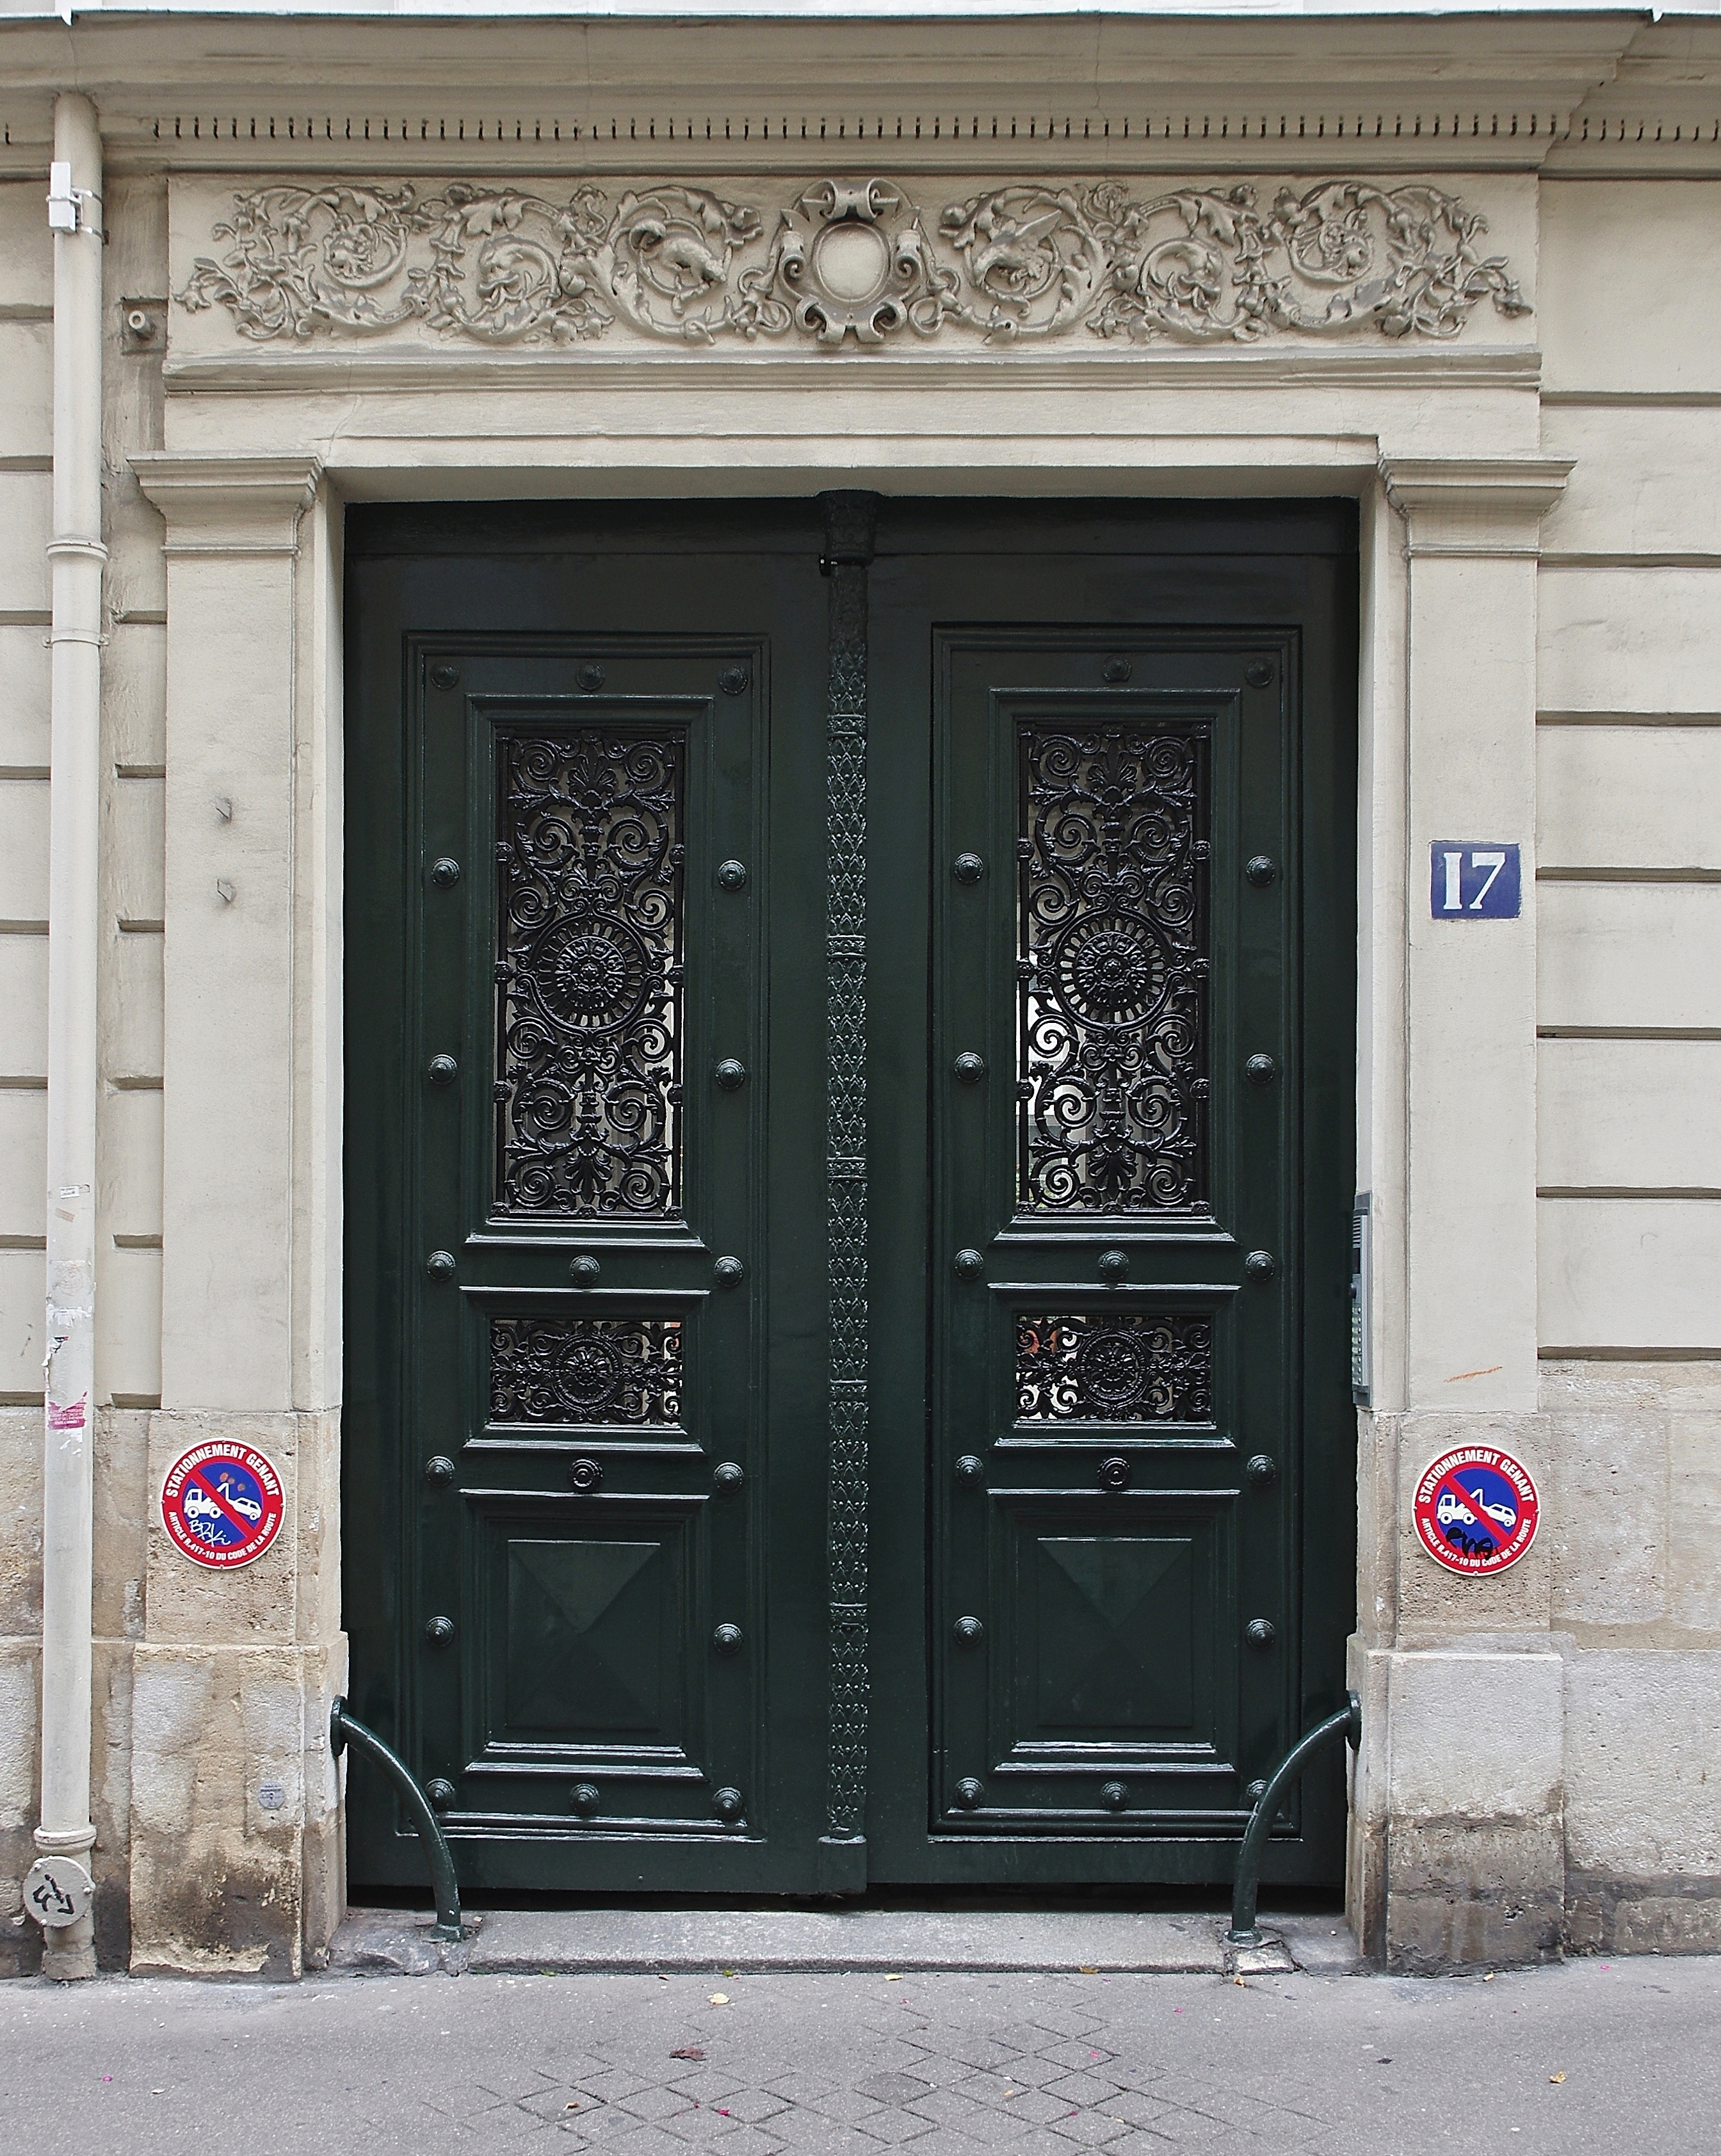 Paris Portail rue de La Rochefoucauld 2012